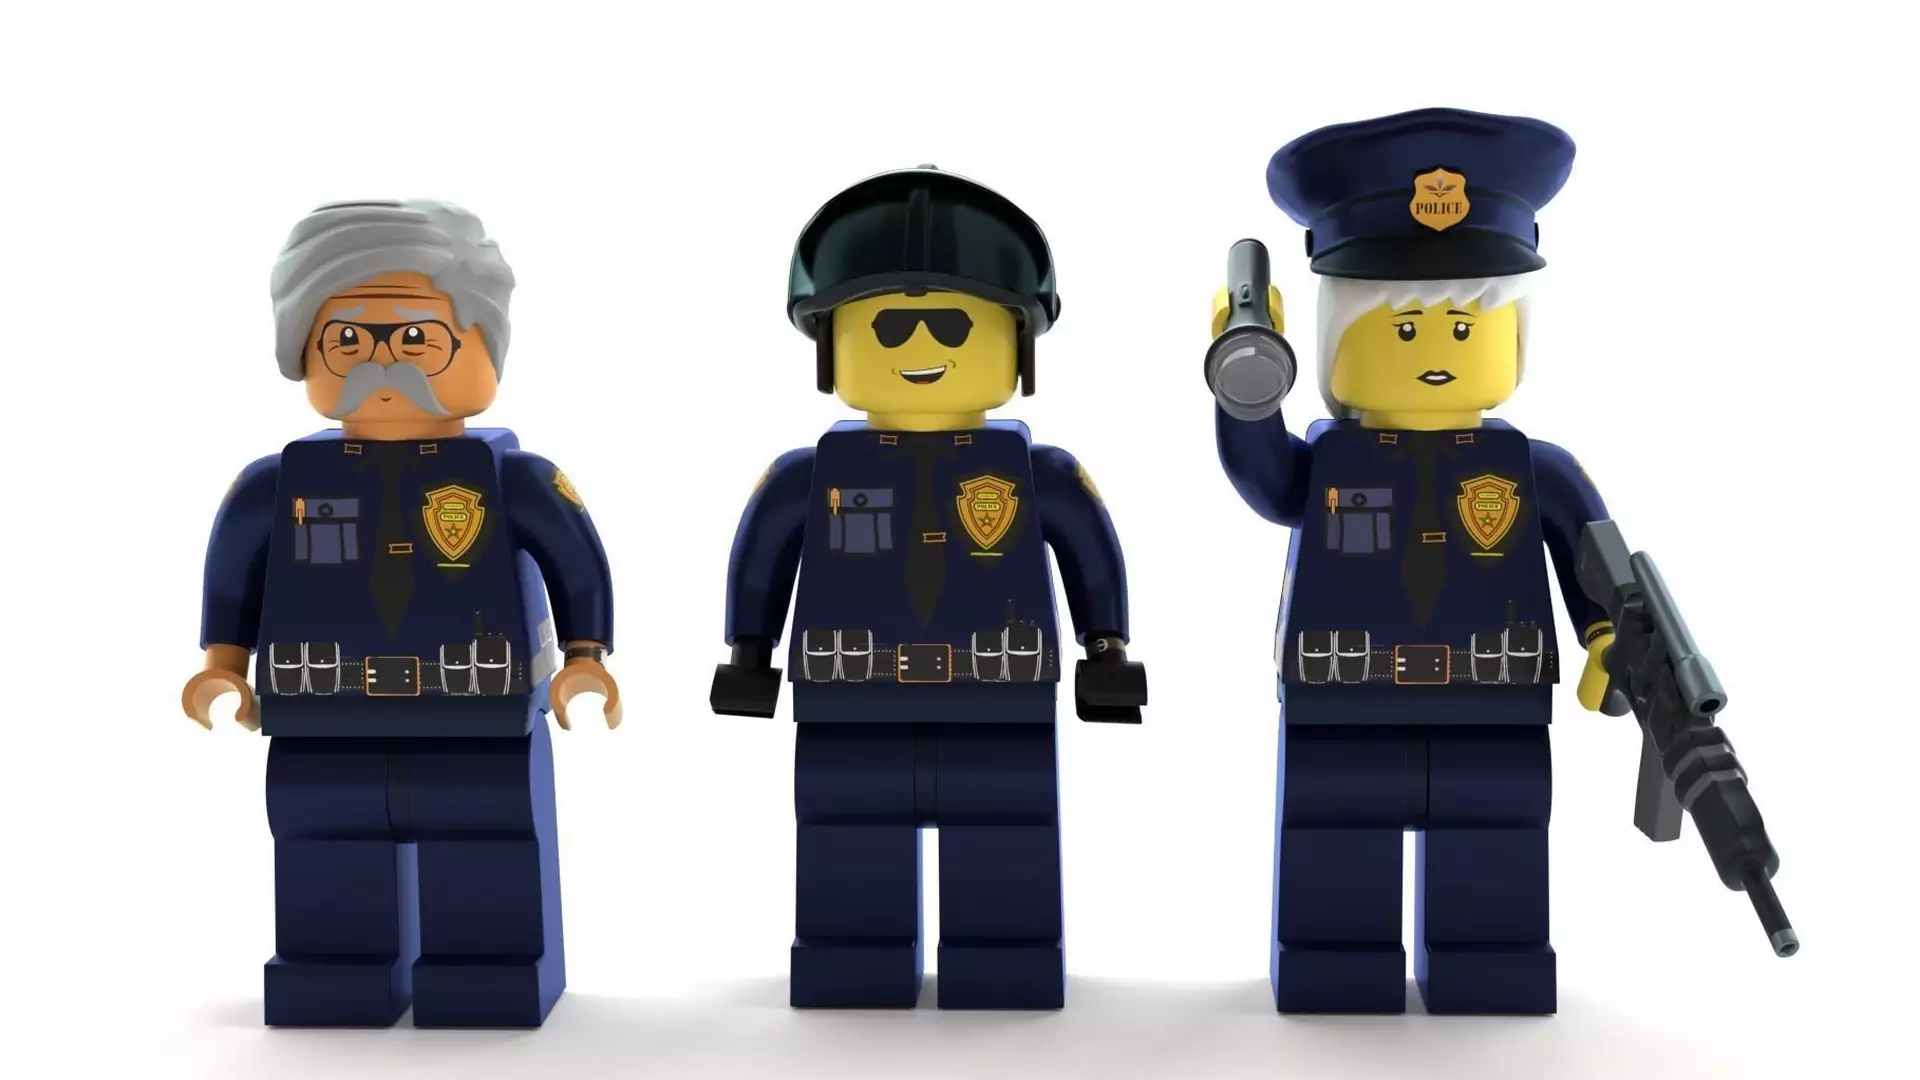 LEGO nie chce reklamować zestawów z policjantami. To reakcja na śmierć George'a Floyda i protesty w USA